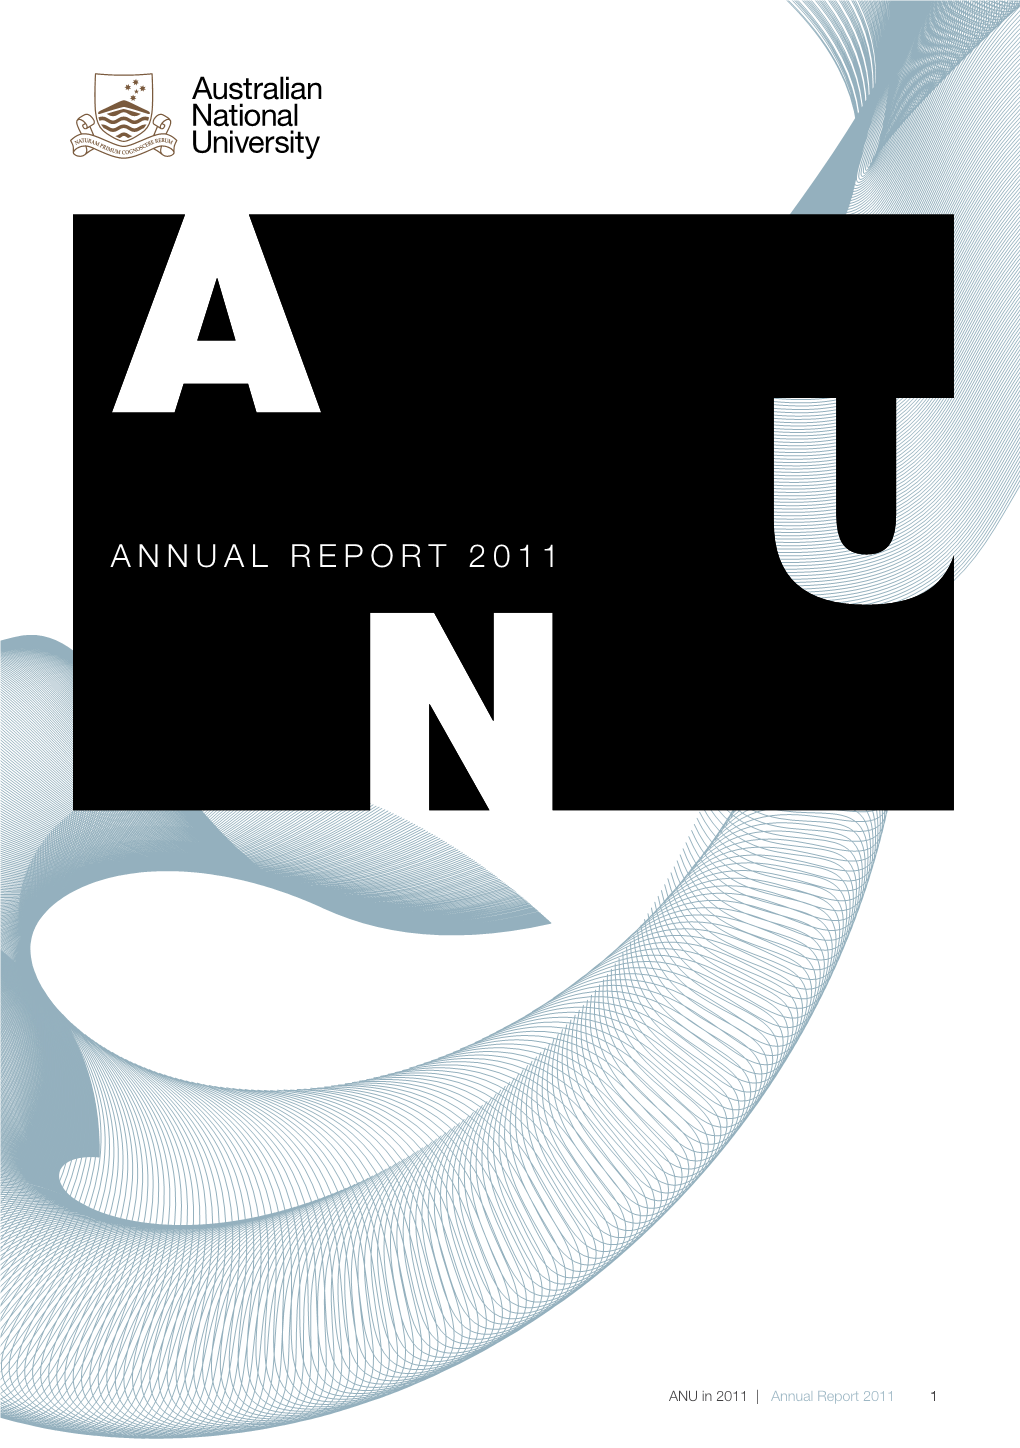 Annual Report 2011 Annual Report 2011 Annual Report